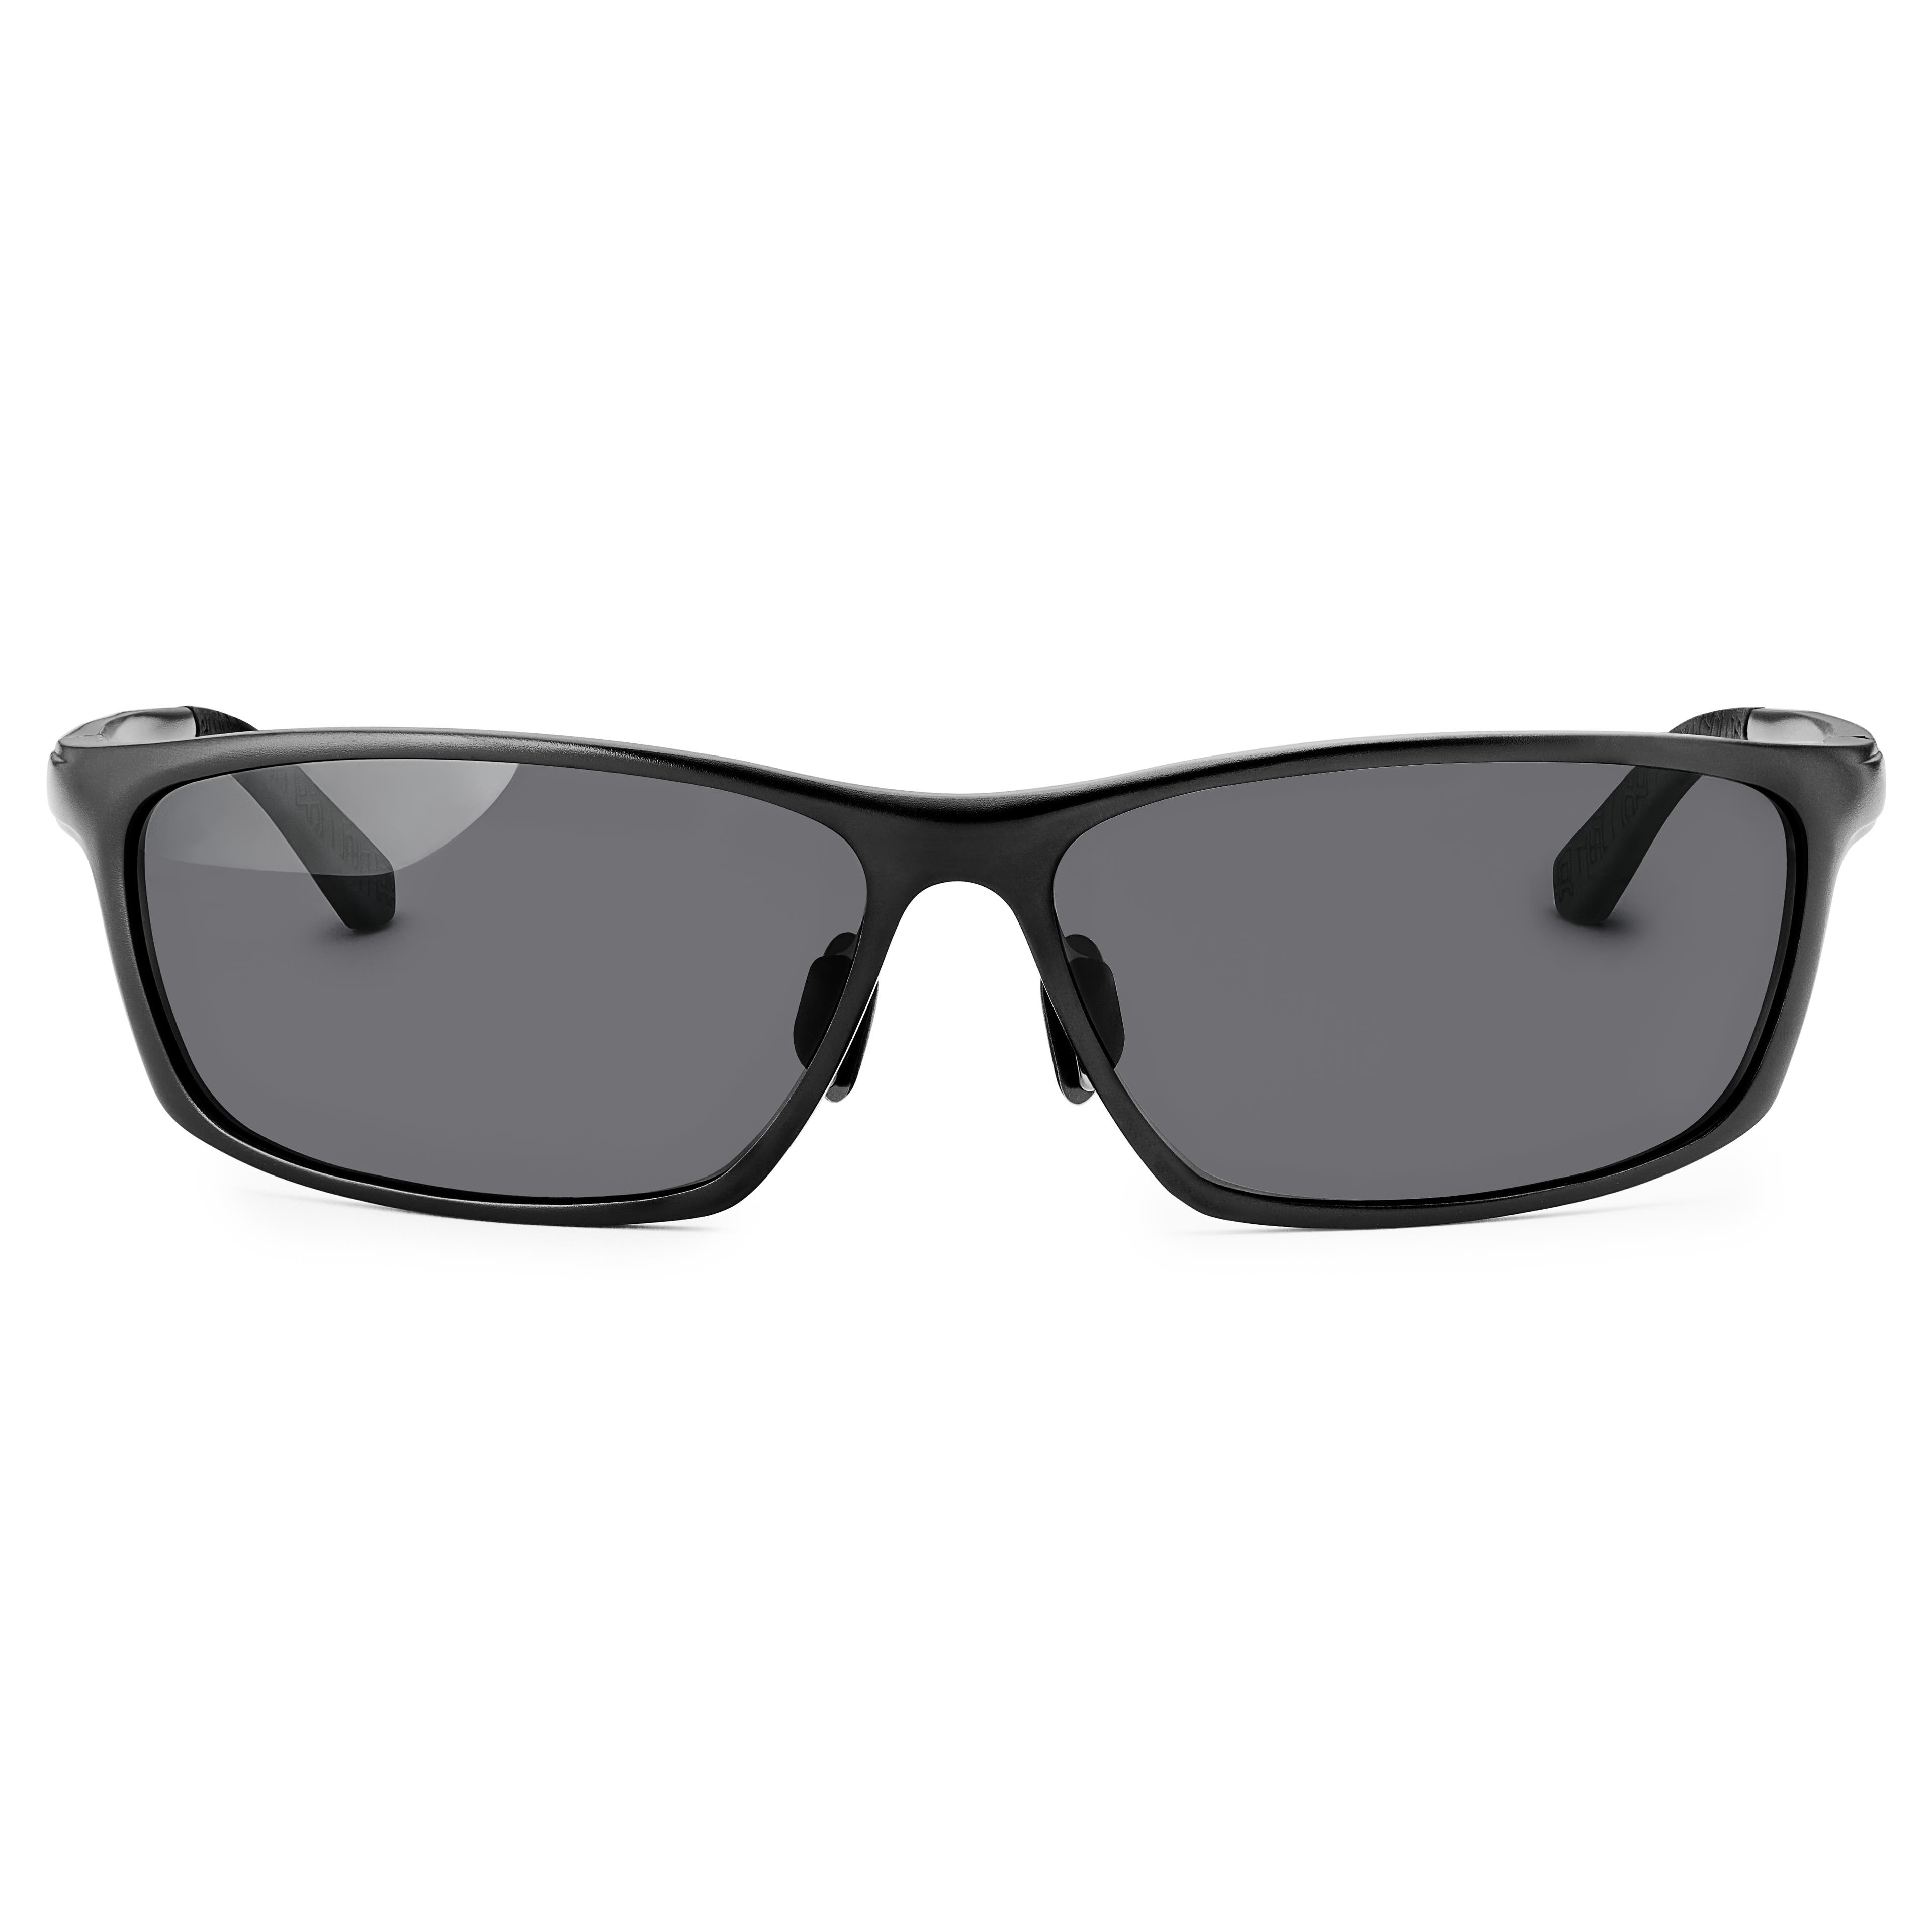 Black Polarized Aluminum Sunglasses, In stock!